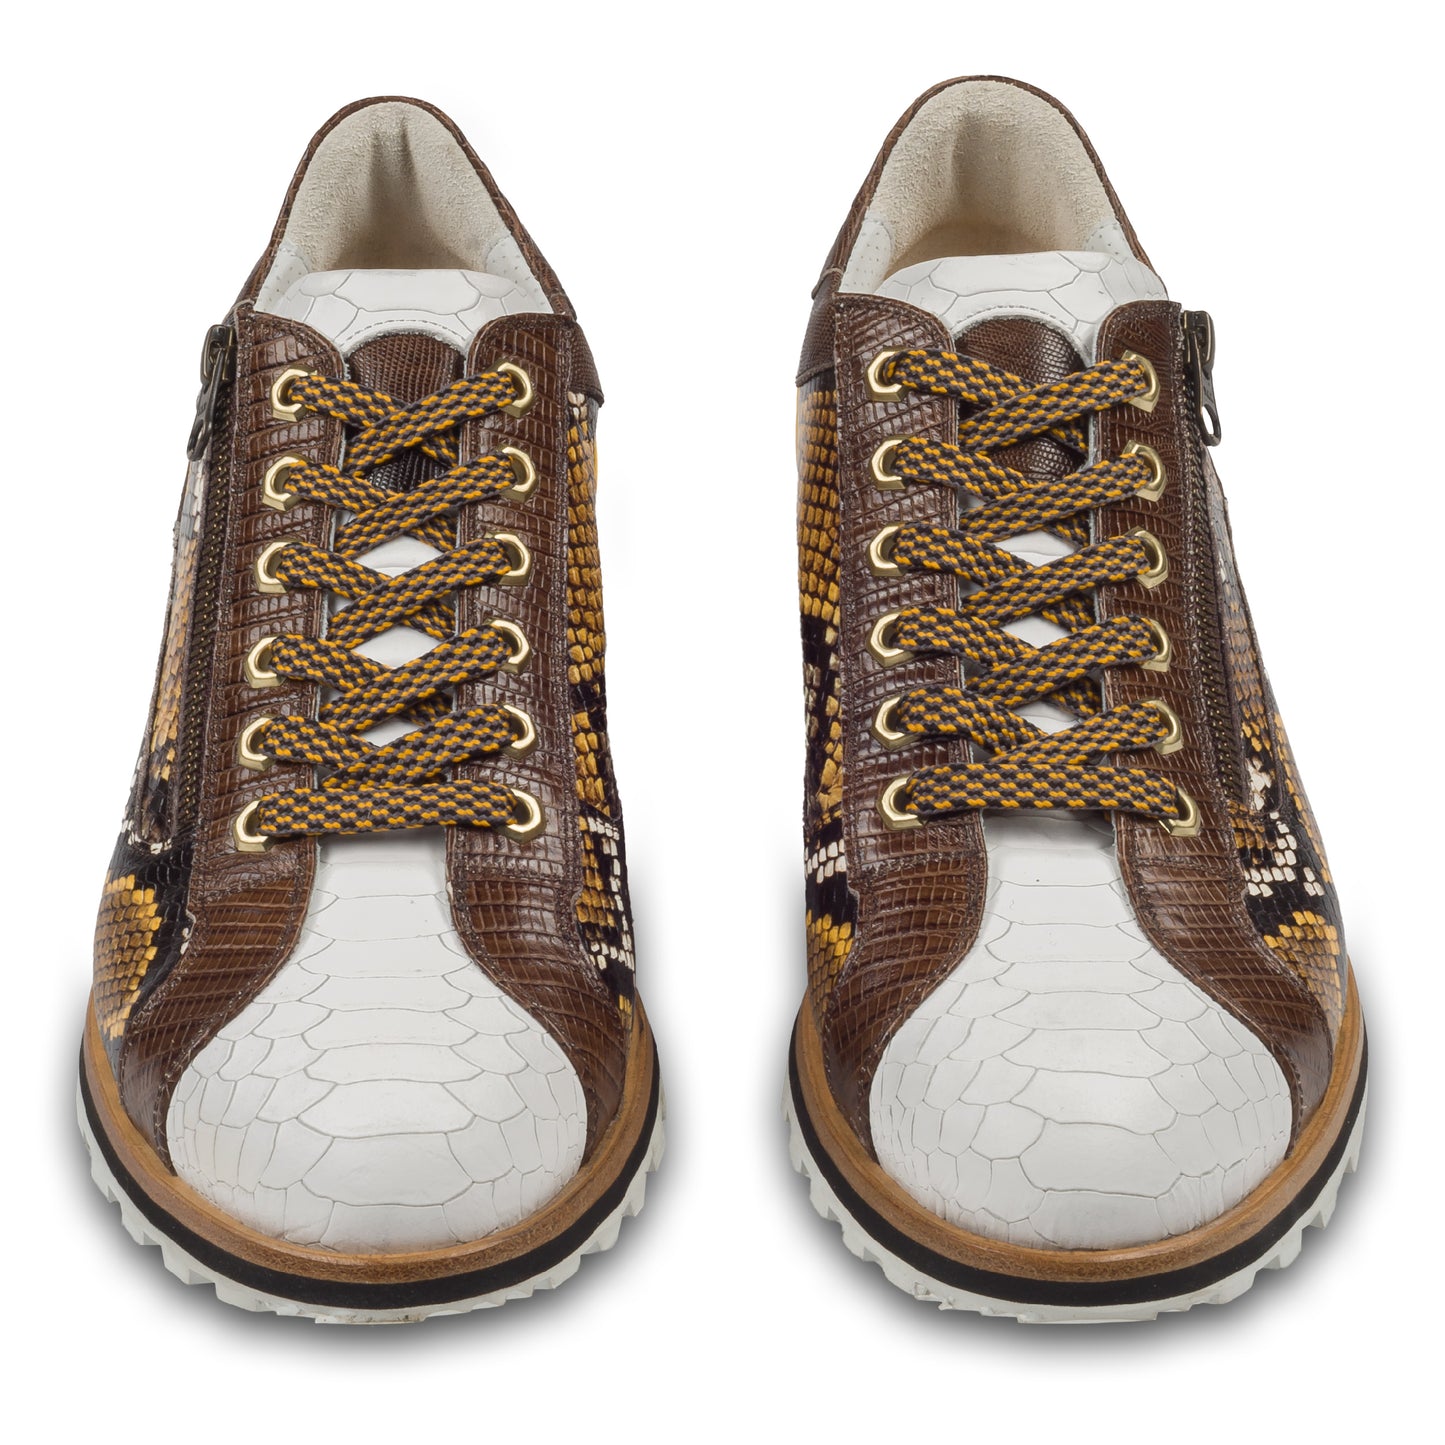 Lorenzi Herren Leder-Sneaker in weiß / gelb / braun mit Schlangen-Prägung. Handgefertigt. Paarweise Ansicht von vorne. Gemusterte Schnürsenkel in grau/gelb.